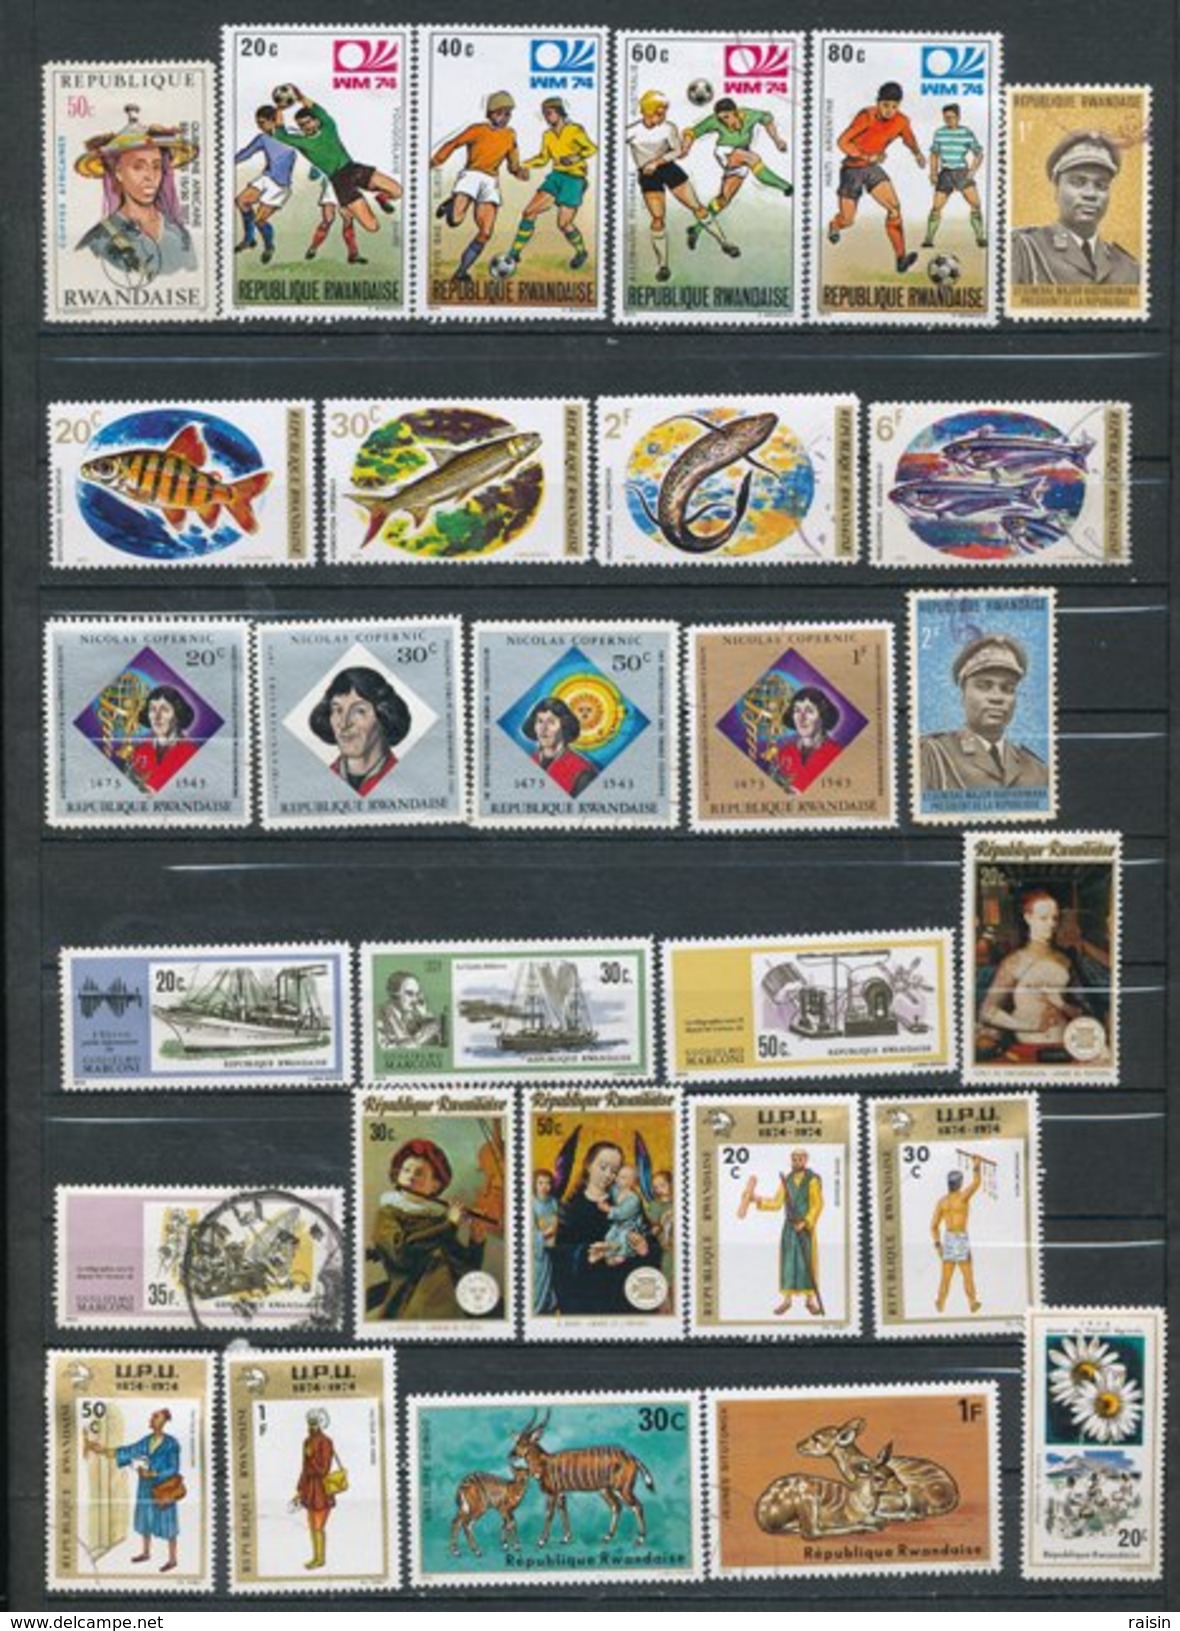 Rwanda Petite collection lot de plus de 350 timbres